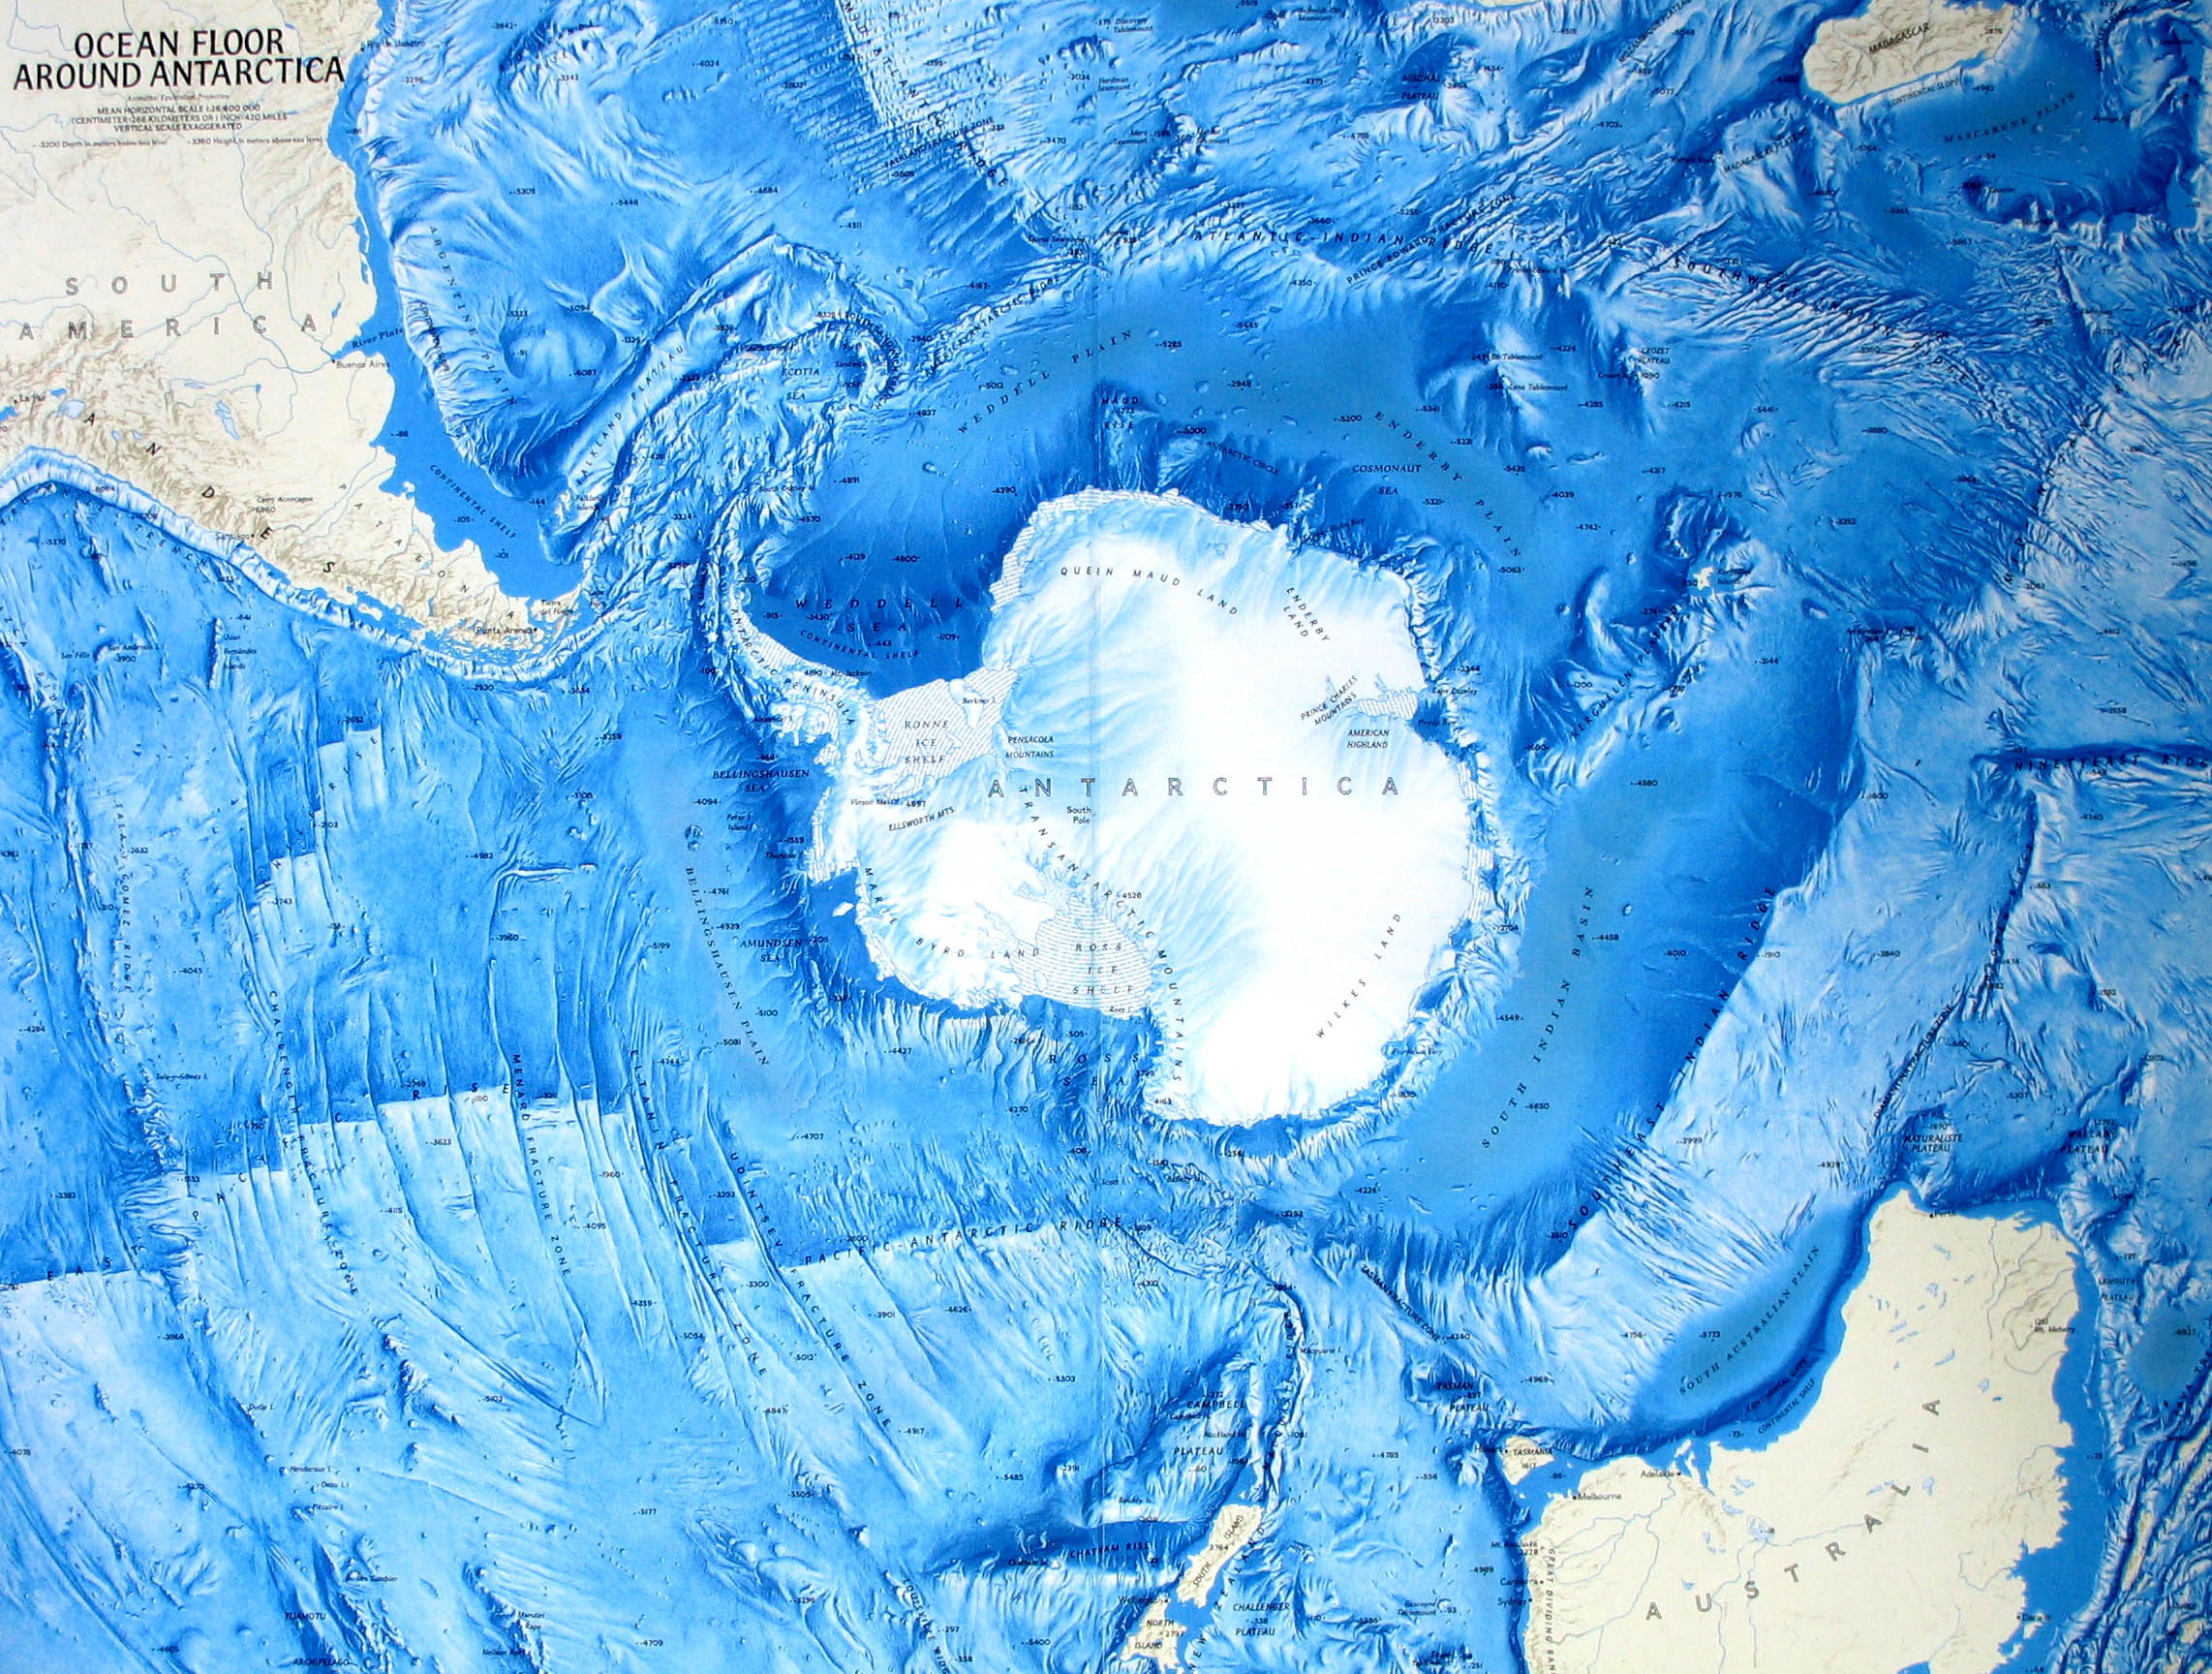 Хребты ледовитого океана. Карта дна Северного Ледовитого океана. Рельеф дна Южного океана. Рельеф дна Северного Ледовитого океана. Антарктида (материк).